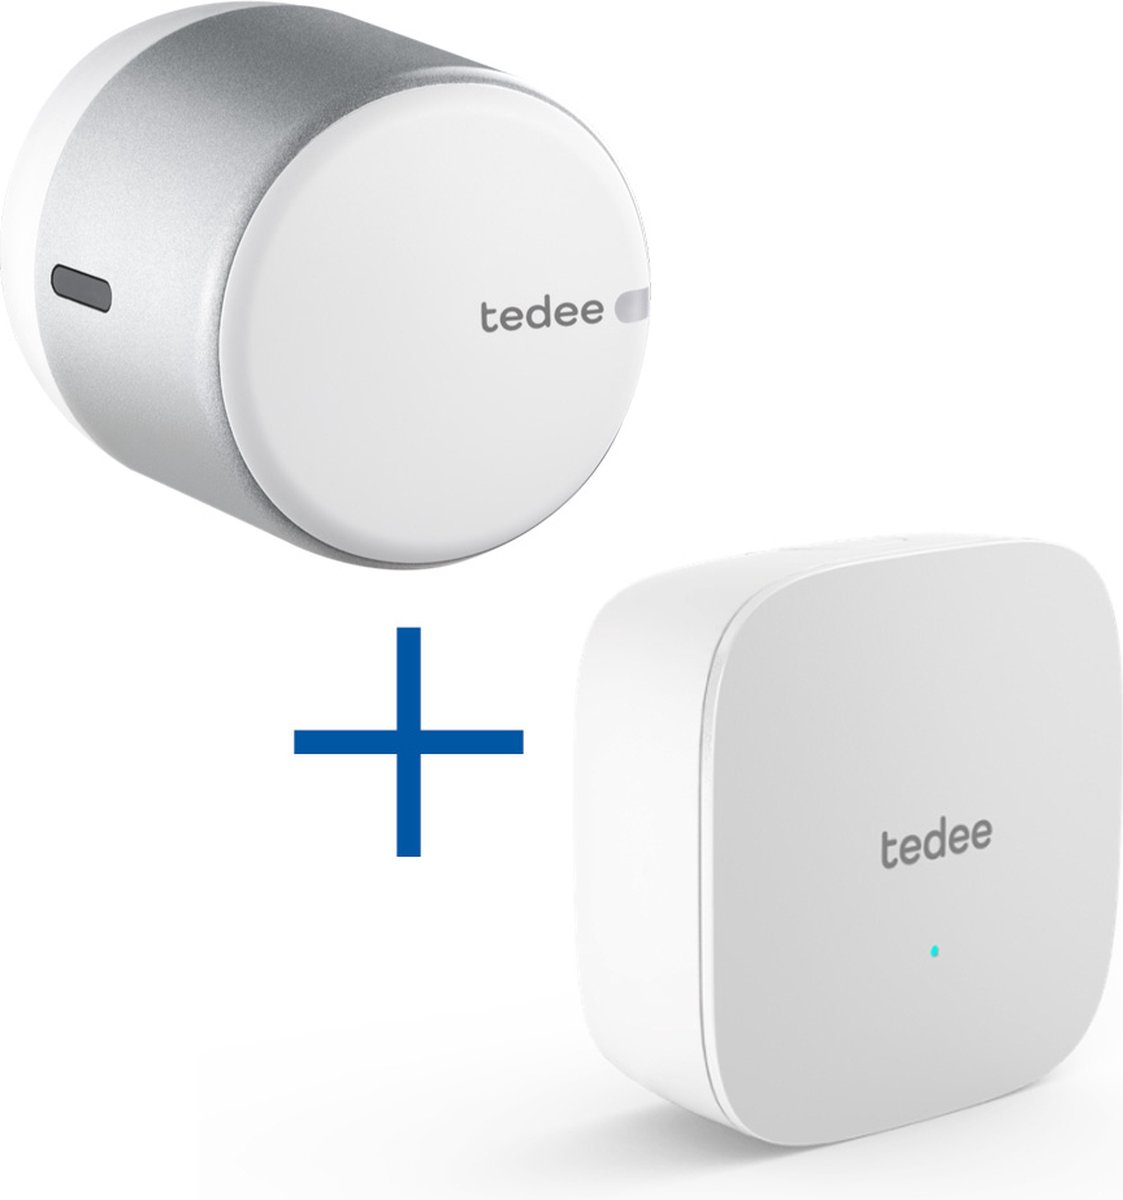 Tedee GO SET (white) - Smartlock + WifiBridge - Koppel met smart home - Openen op afstand - Diameter 57mm - Tedee